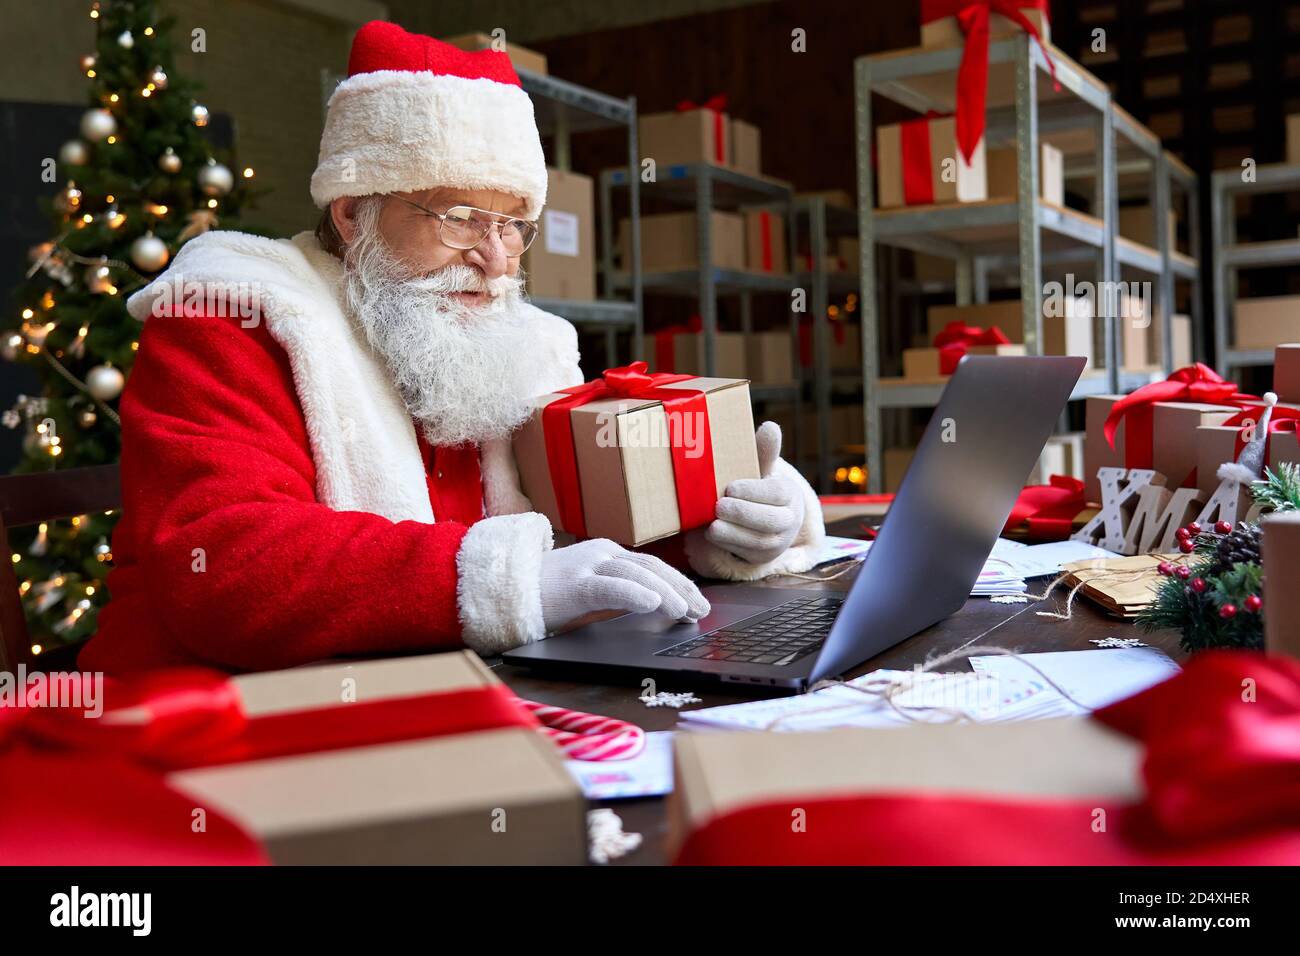 Weihnachtsmann hält Geschenk mit Laptop-Computer sitzen am Workshop-Tisch  Stockfotografie - Alamy